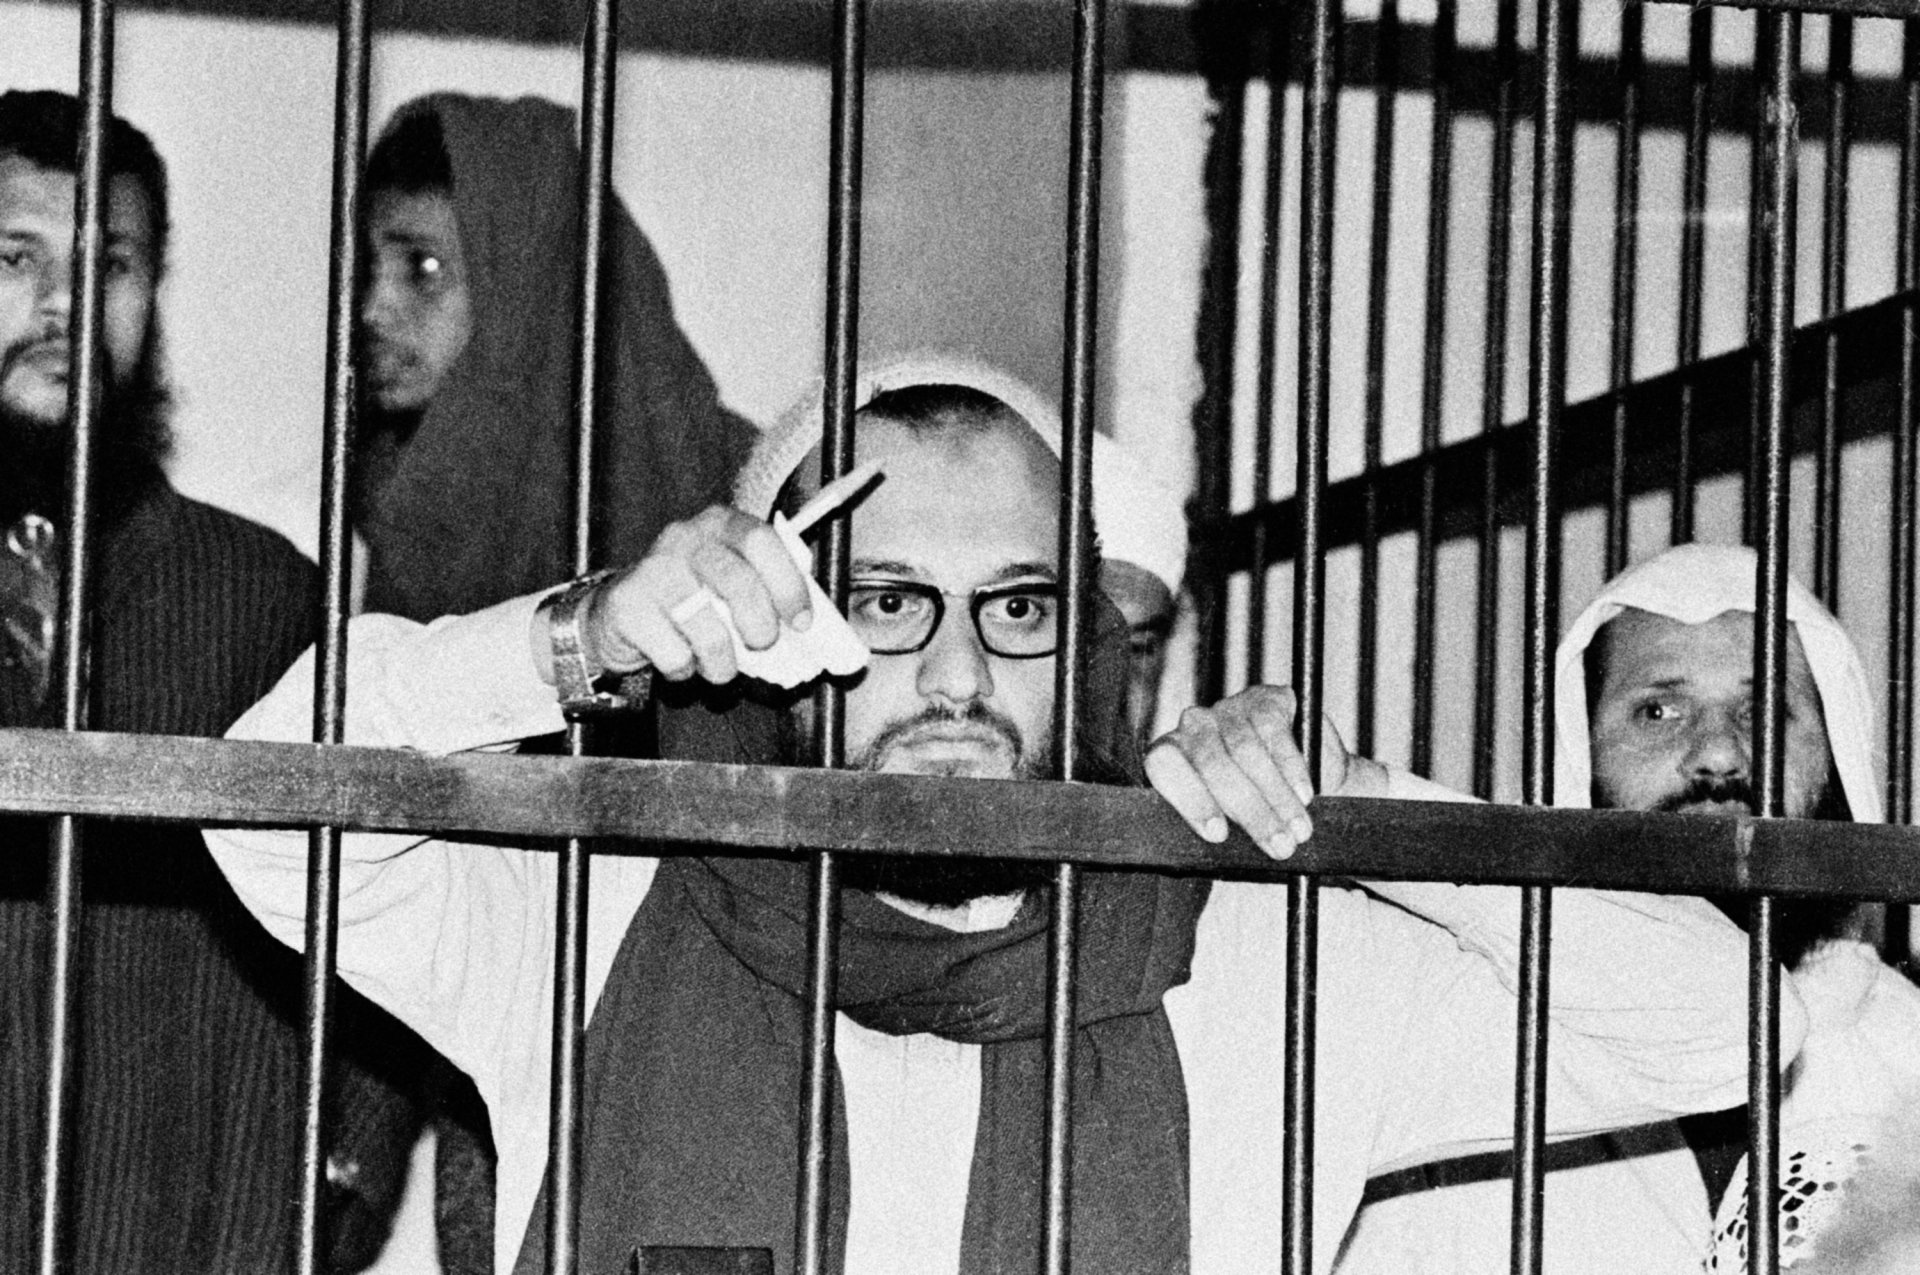 Айман Ал-Зауахри стои зад решетките в египетски съд през 1982 г. по време на процеса срещу него като един от организаторите на убийството на египетския президент Ануар Садат през 1981 г.